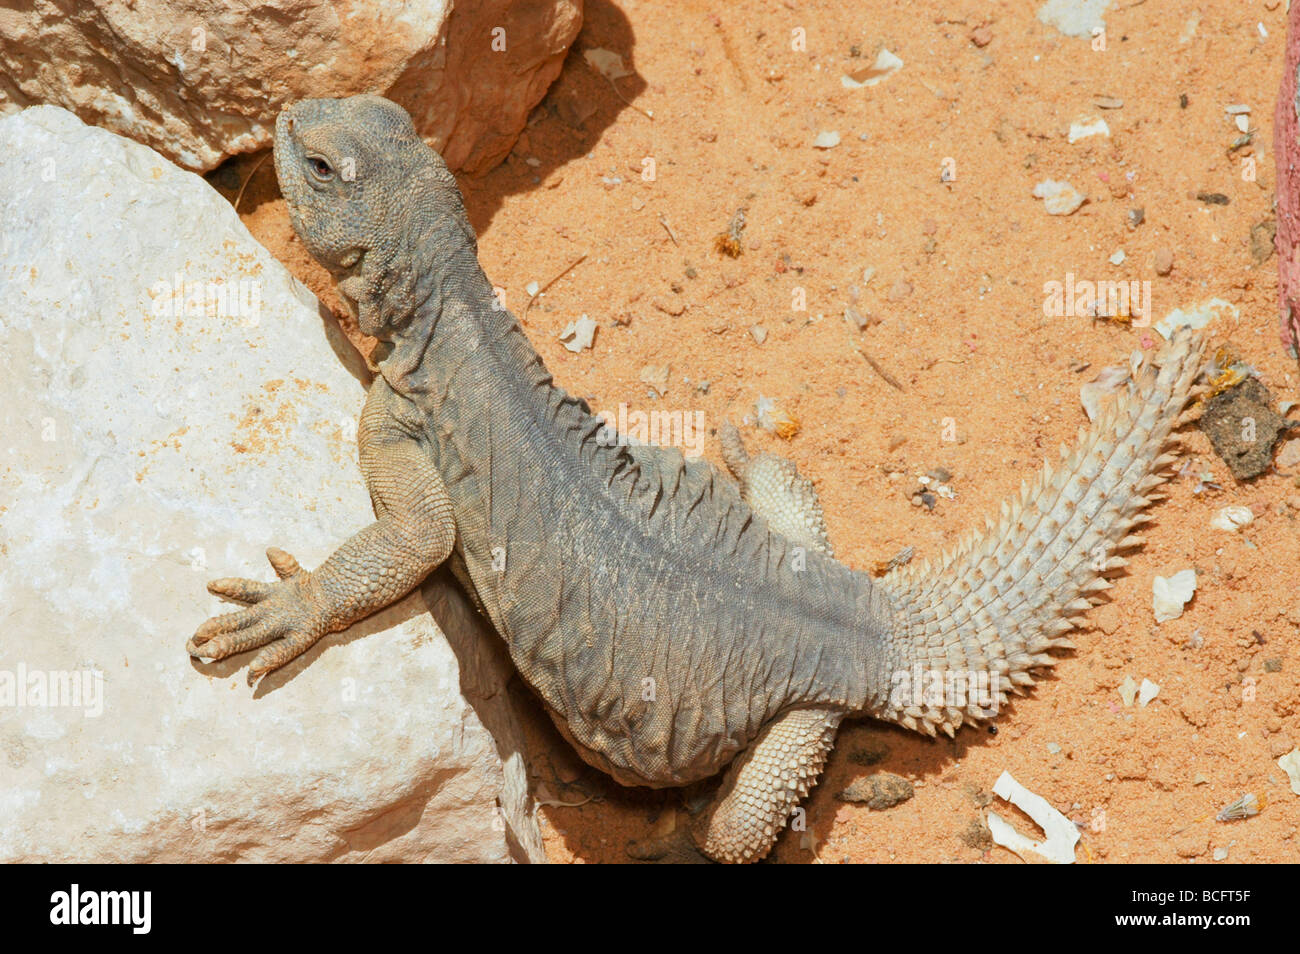 Egyptian Mastigure Uromastyx aegyptia lizard Stock Photo